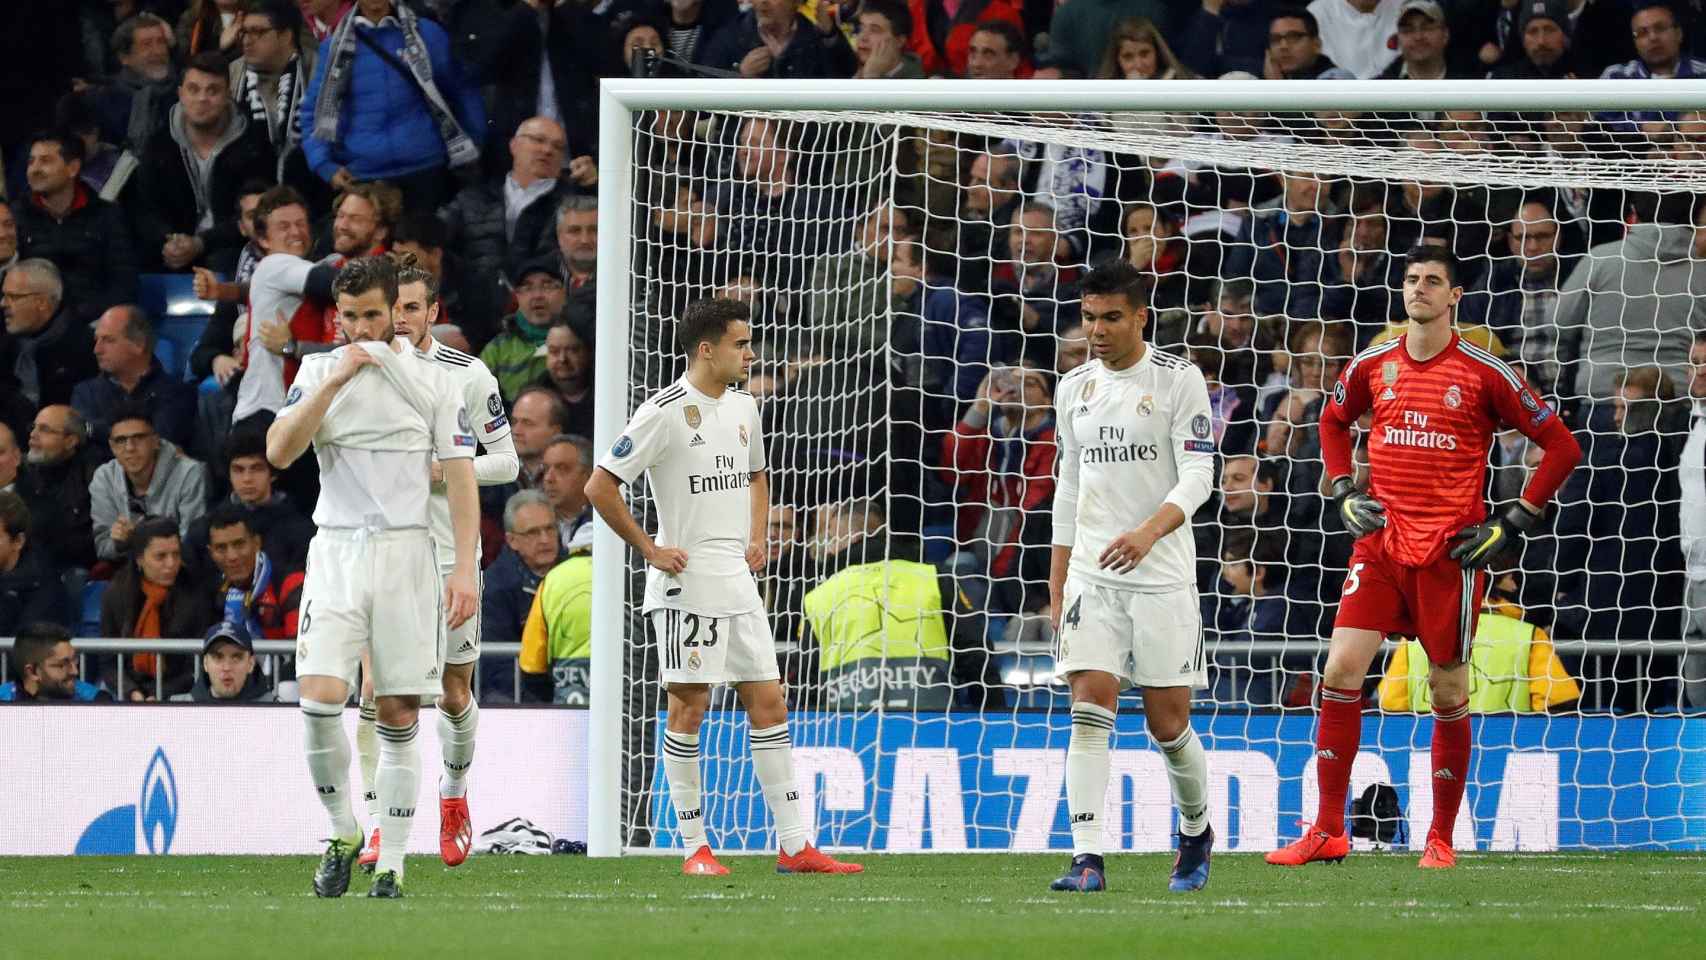 Los jugadores del Real Madrid lamentan la eliminación en Champions League / EFE